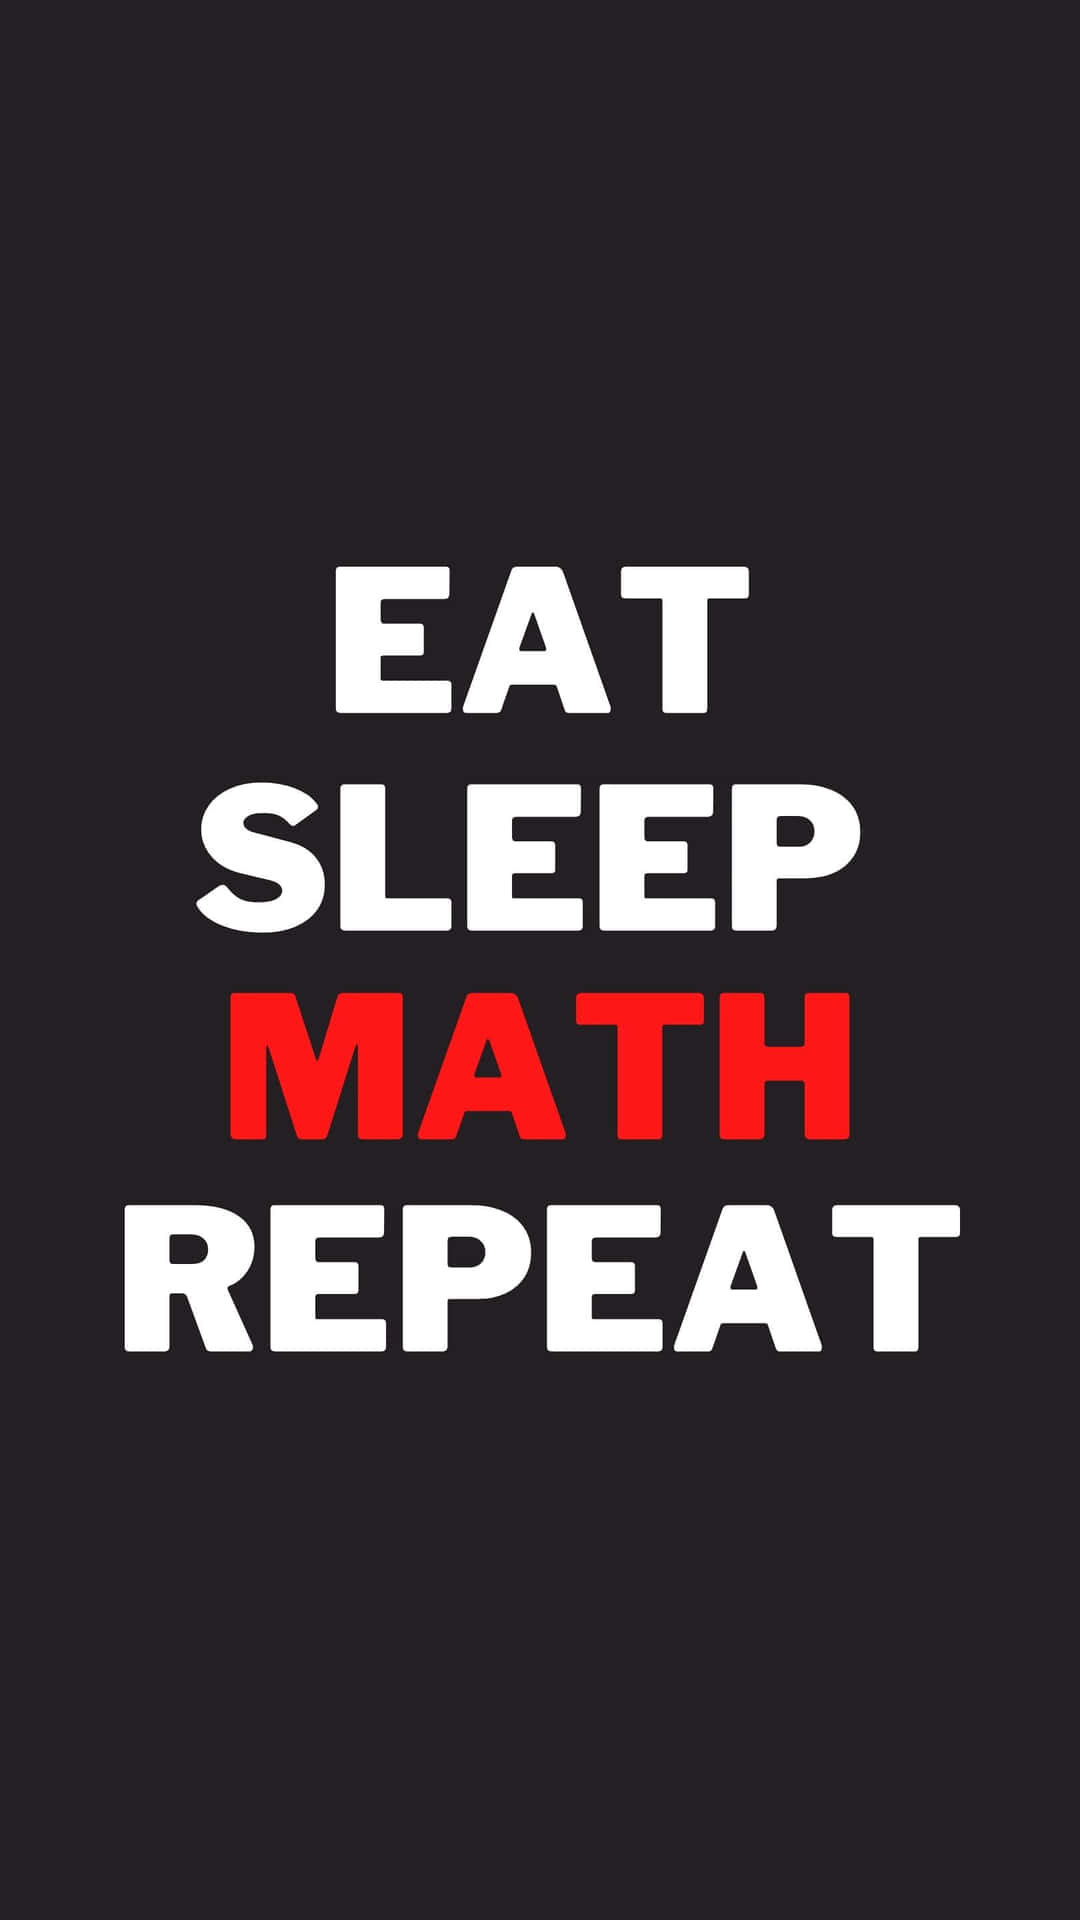 Eat Sleep Math Repeat - Eat Sleep Math Repeat Background